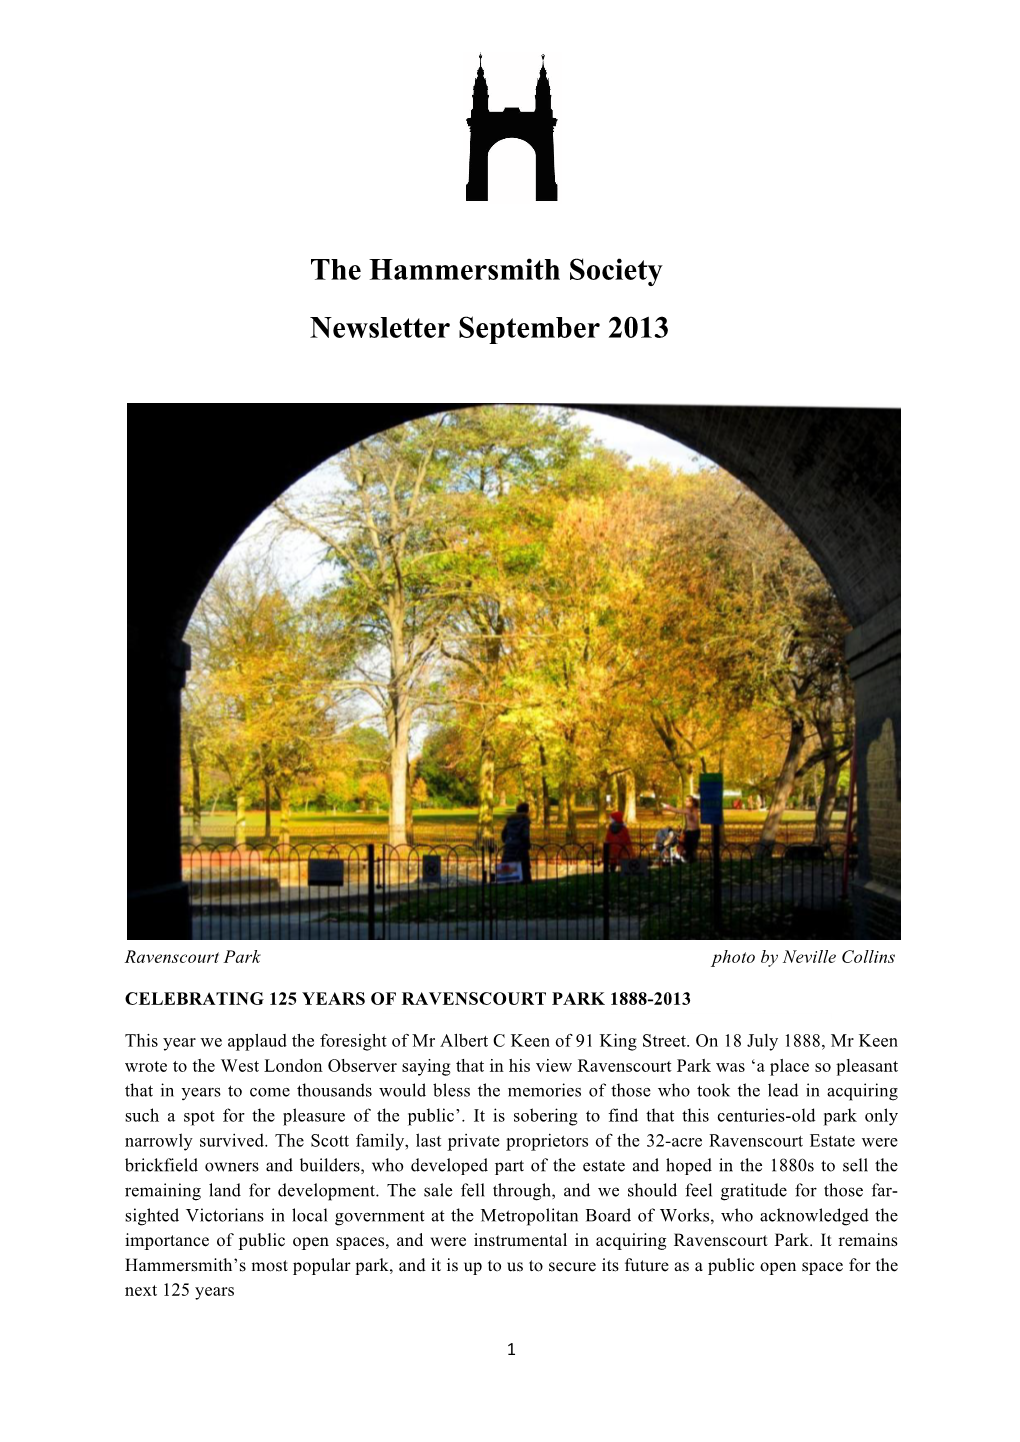 The Hammersmith Society Newsletter September 2013